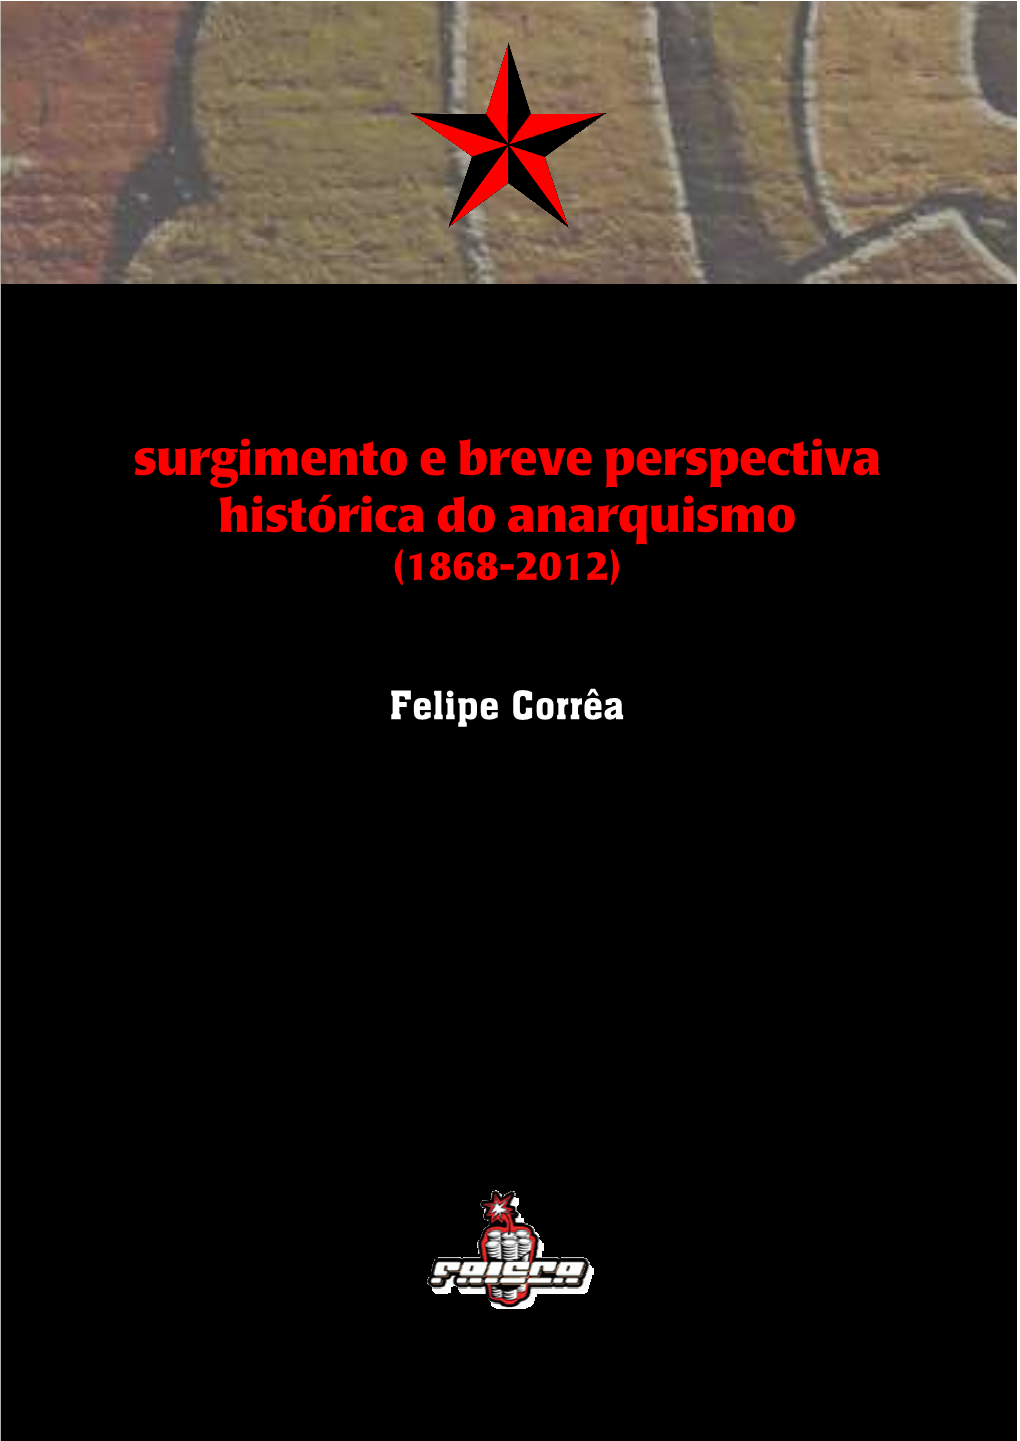 Felipe Corrêa – Surgimento E Breve Perspectiva Histórica Do Anarquismo